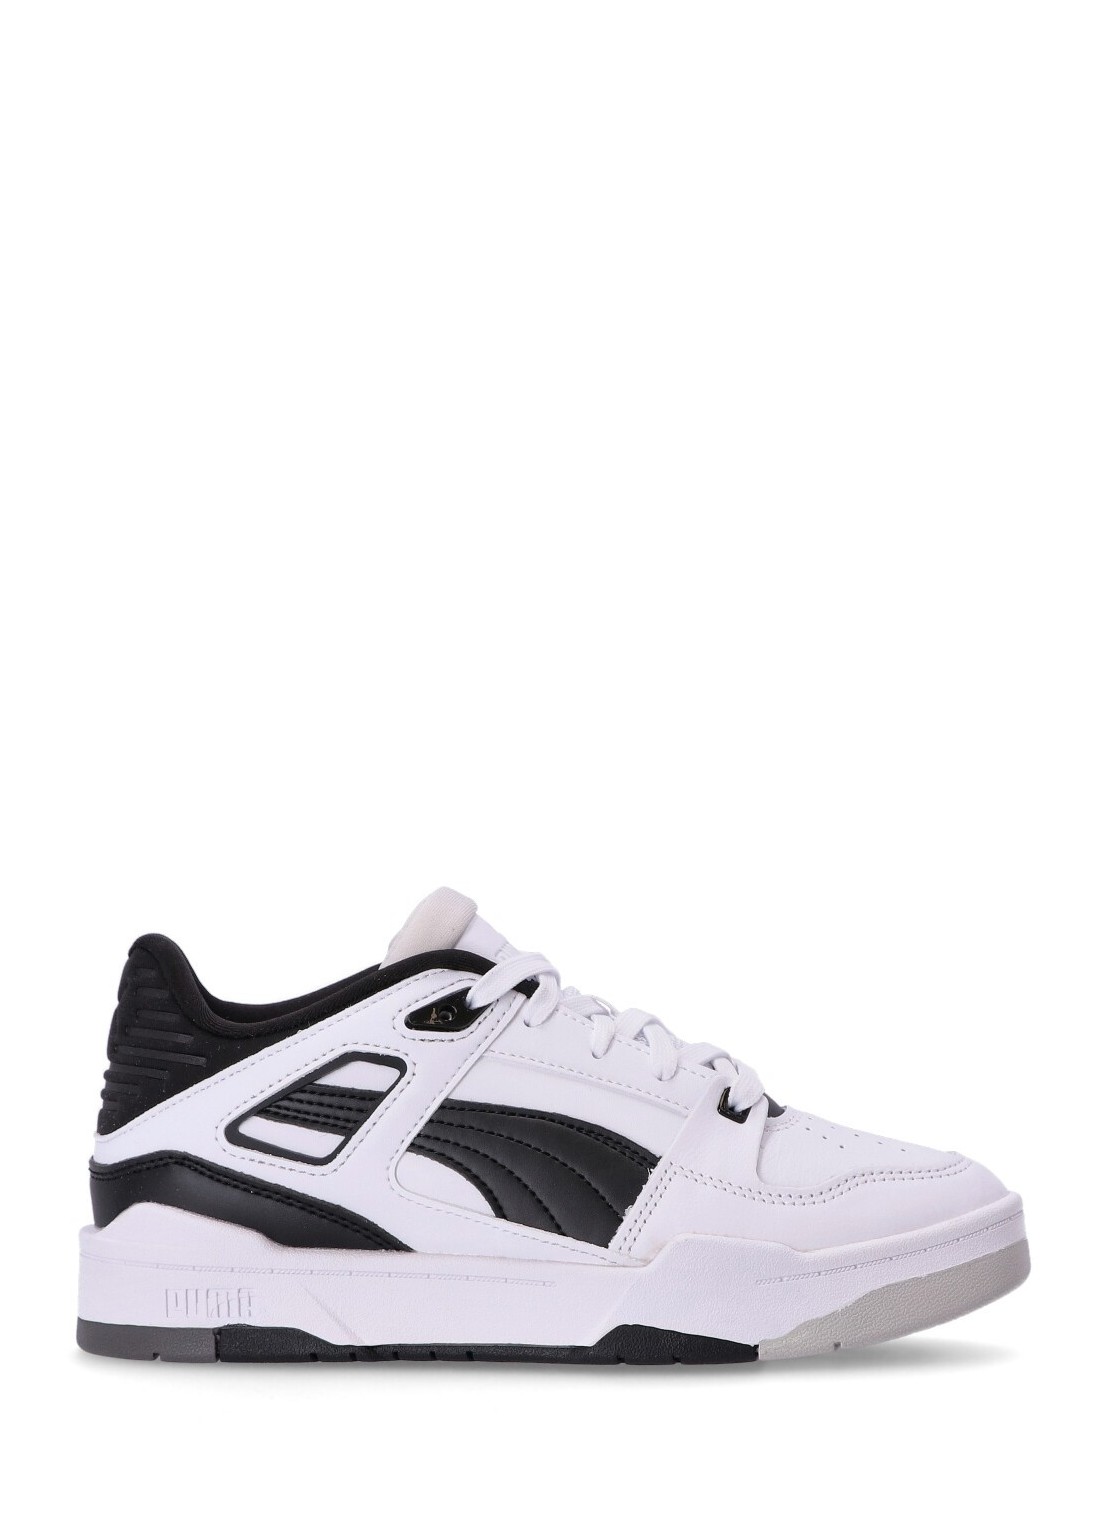 Sneaker puma sneaker woman slipstream invdr wns 38627003 white  black glacier gray talla 40
 